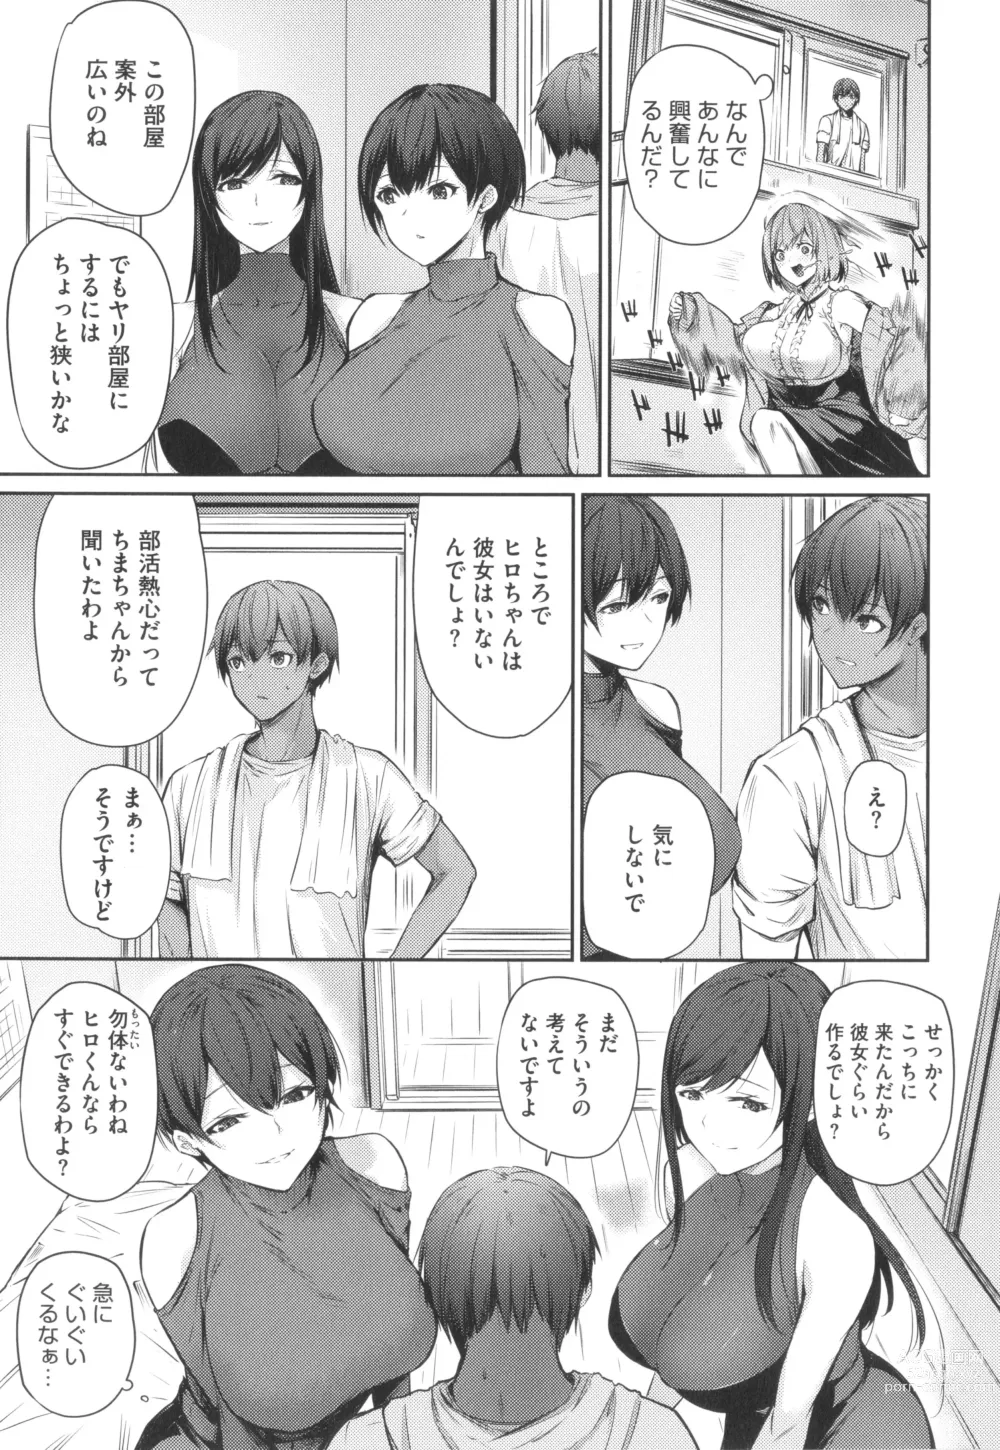 Page 6 of manga Karada Awase